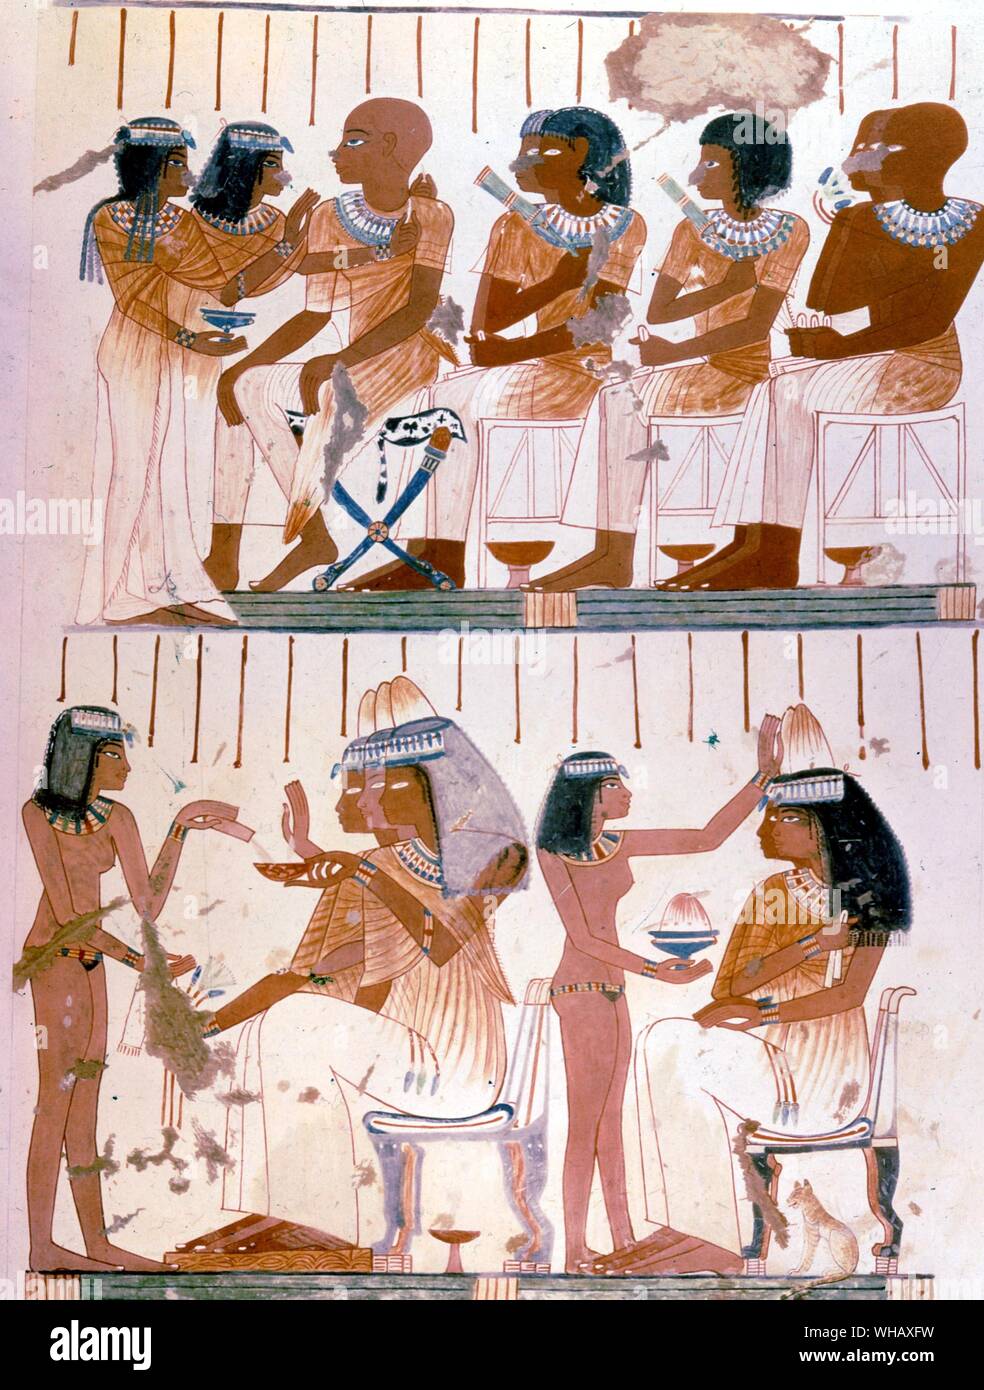 Xviiie Dynastie Thèbes tombe de Nebamun. 18ème dynastie. Nebamun servis pendant le règne d'Amenhotep II. Il est sculpteur et supervisé la construction de nombreux projets de bâtiment royal. Il a été enterré dans un tombeau avec Ipuki, son frère, qui a été trouvé à Thèbes, près de Deir el-Bahri. Les meubles dans le monde antique page 193.. Banque D'Images